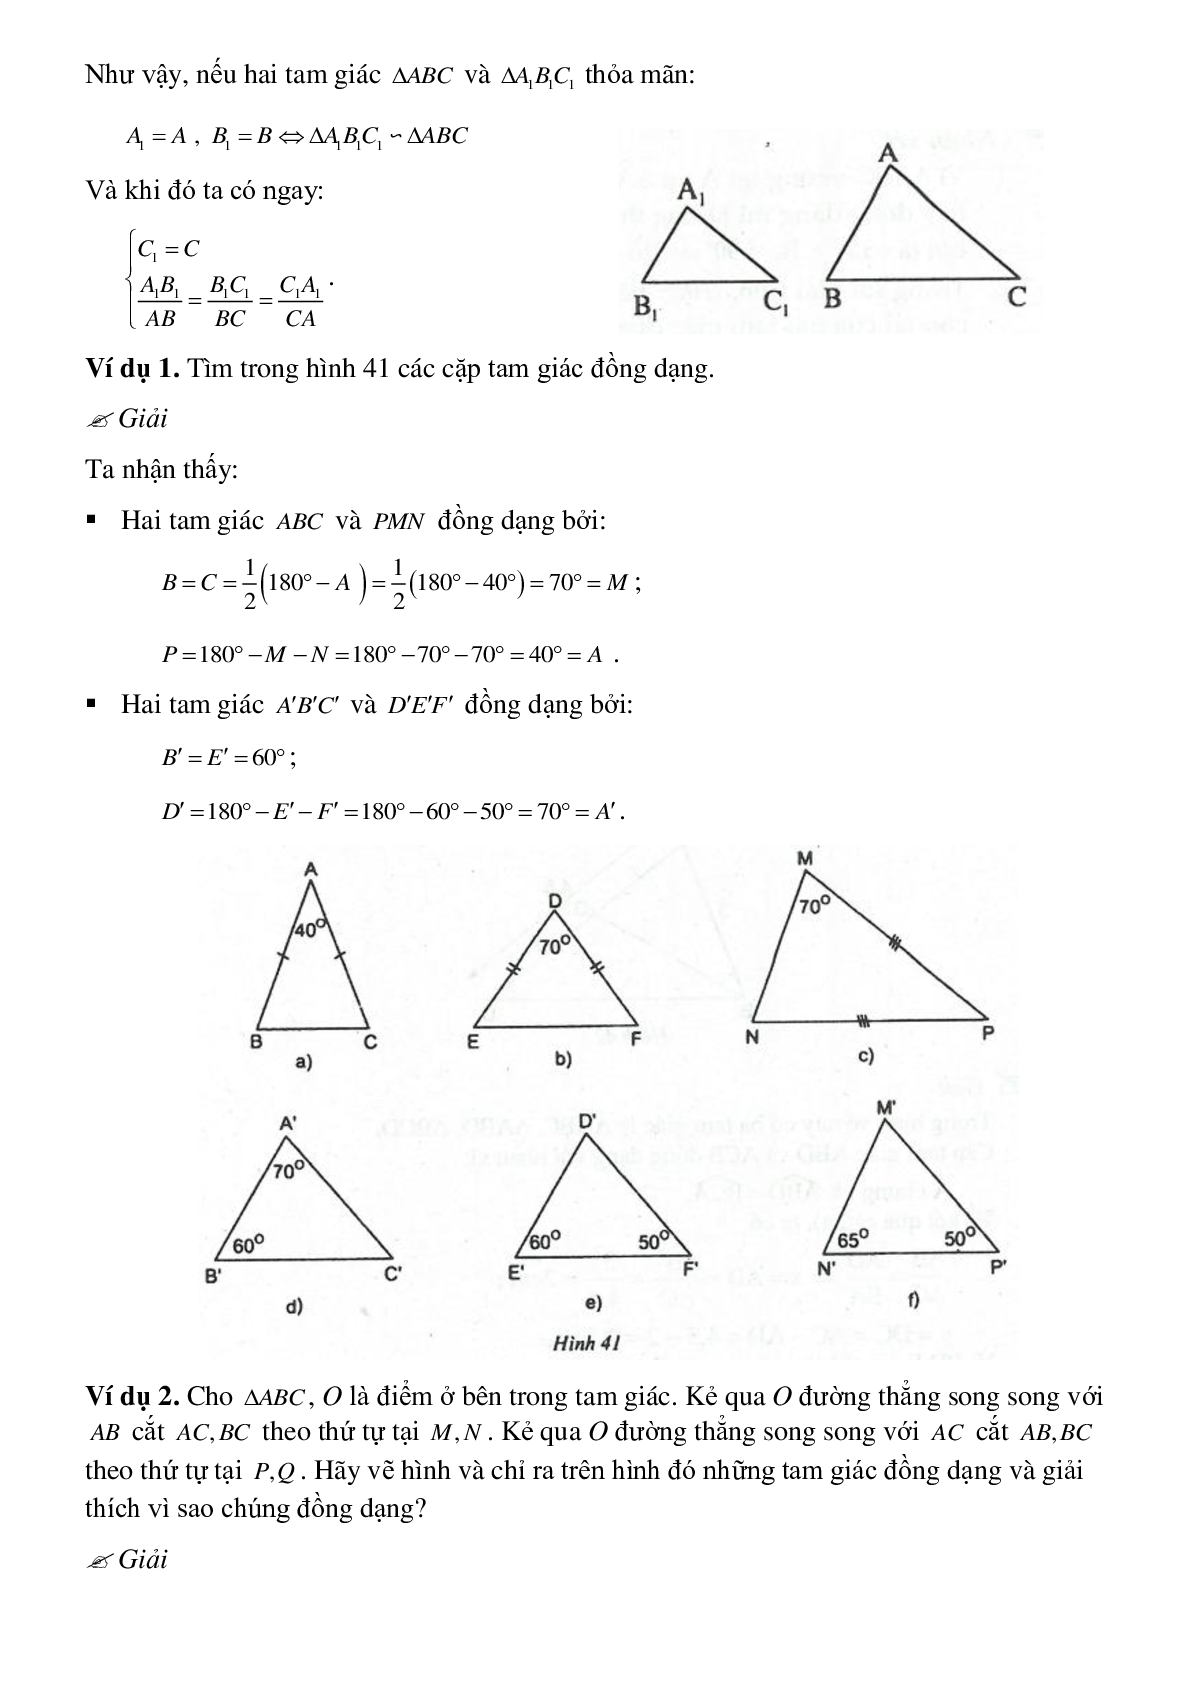 Phương pháp giải cụ thể, bài bác tập dượt về Chứng minh nhị tam giác đồng dạng tinh lọc (trang 5)